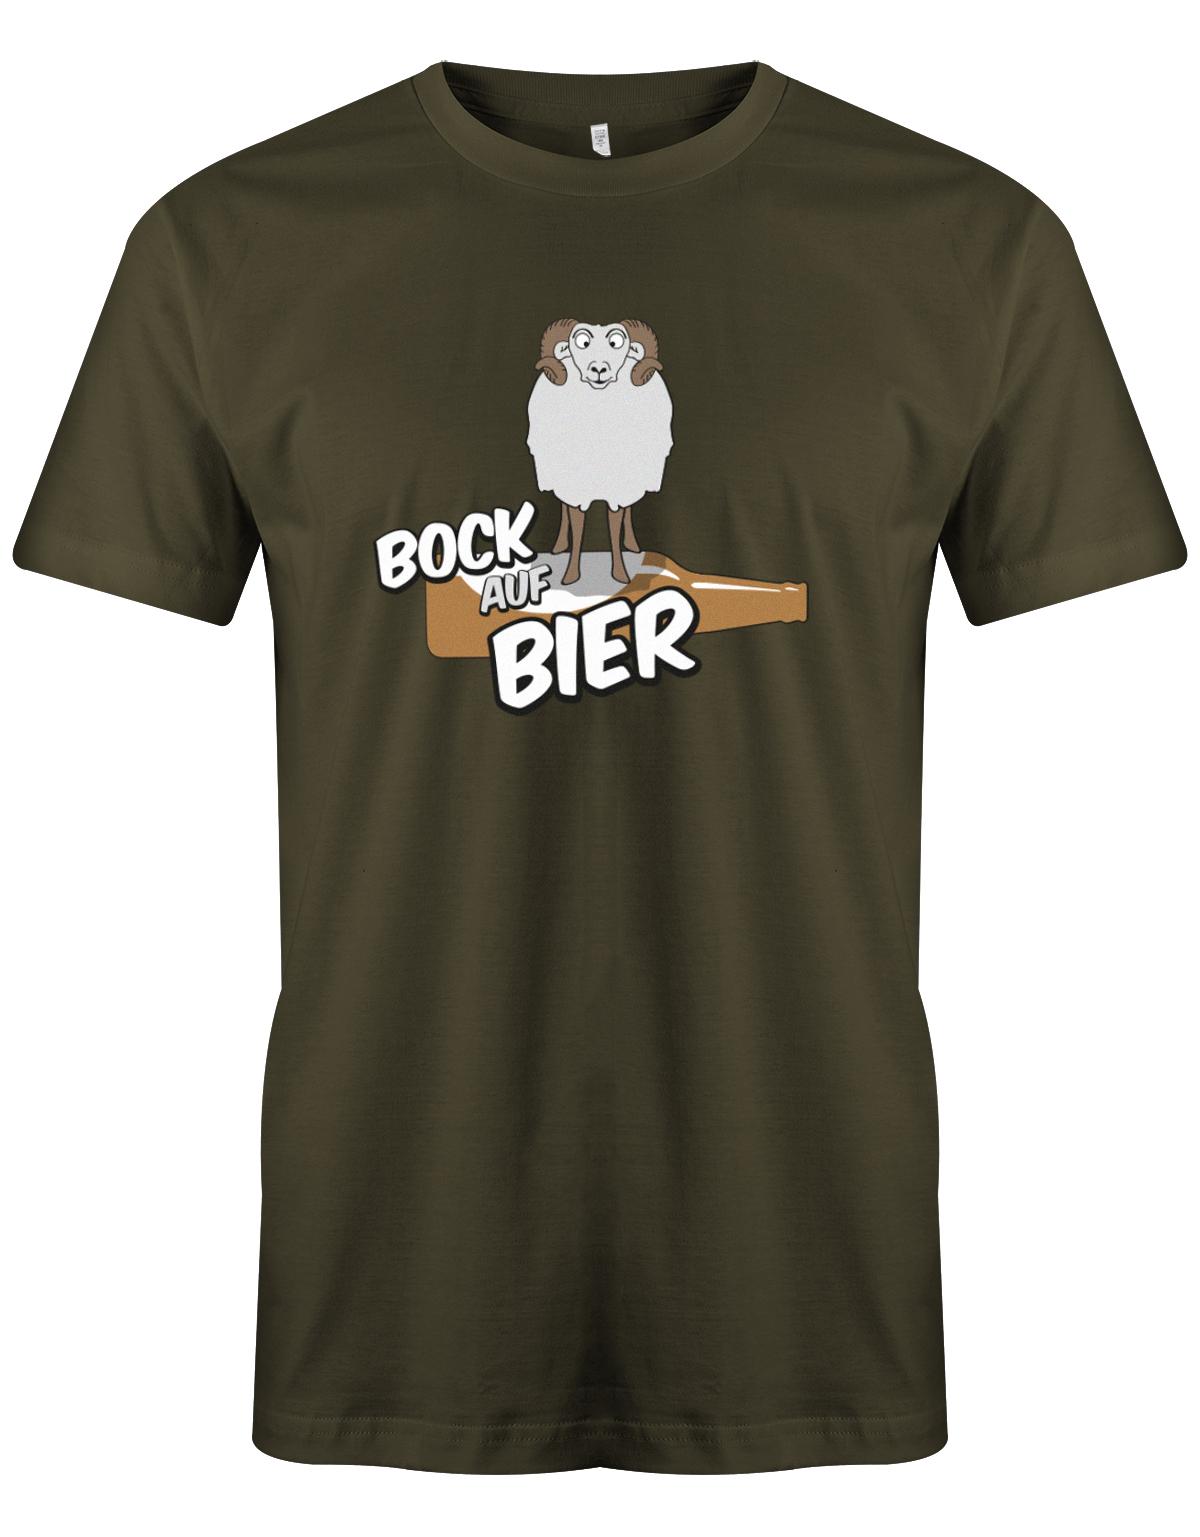 Bock-auf-Bier-Herren-Shirt-Army